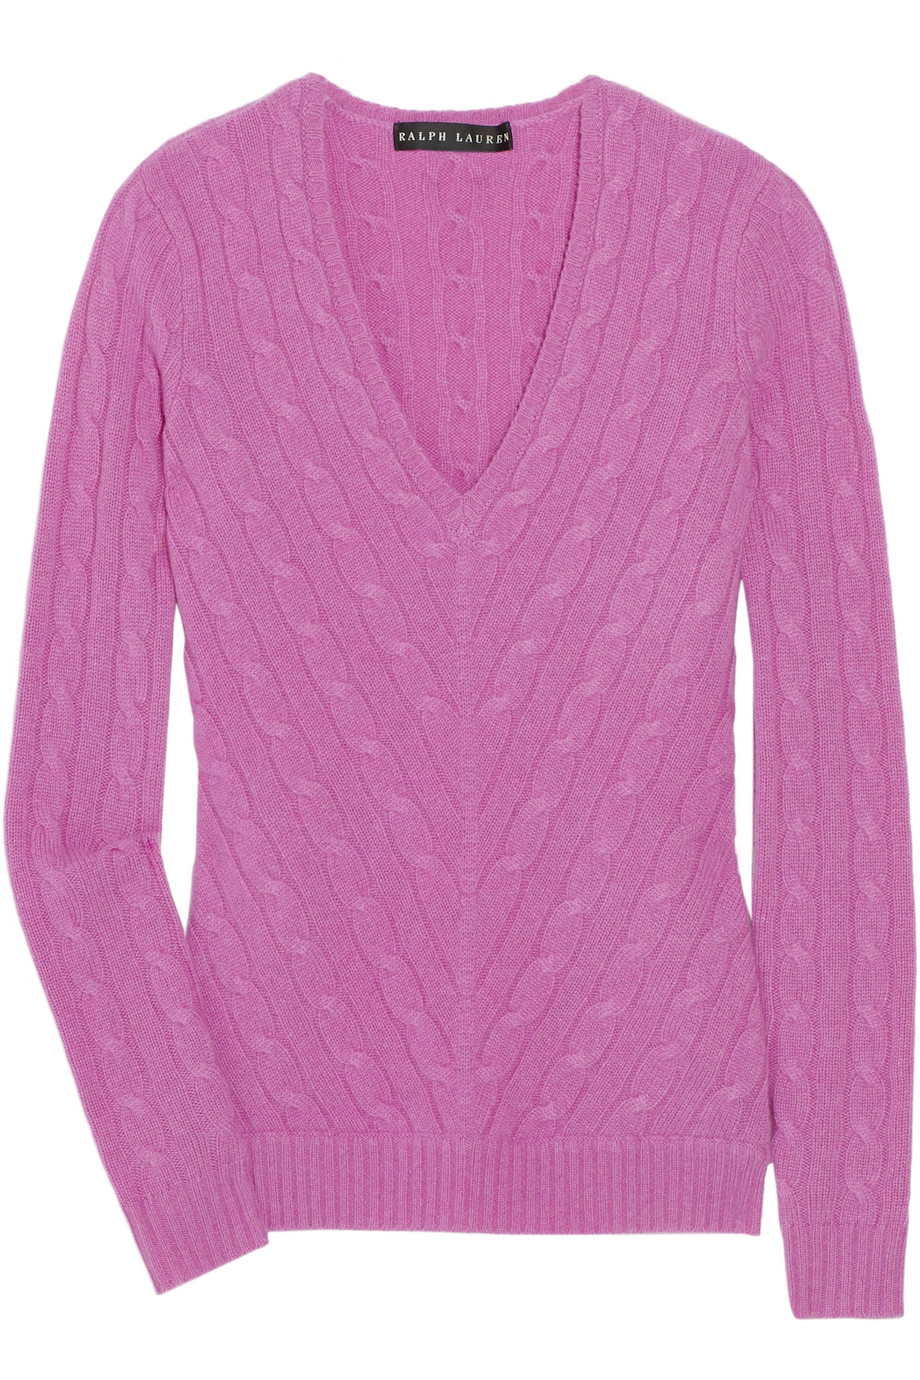 Ralph Lauren Black Label V-neck Cashmere Sweater in Lavender (Pink) | Lyst